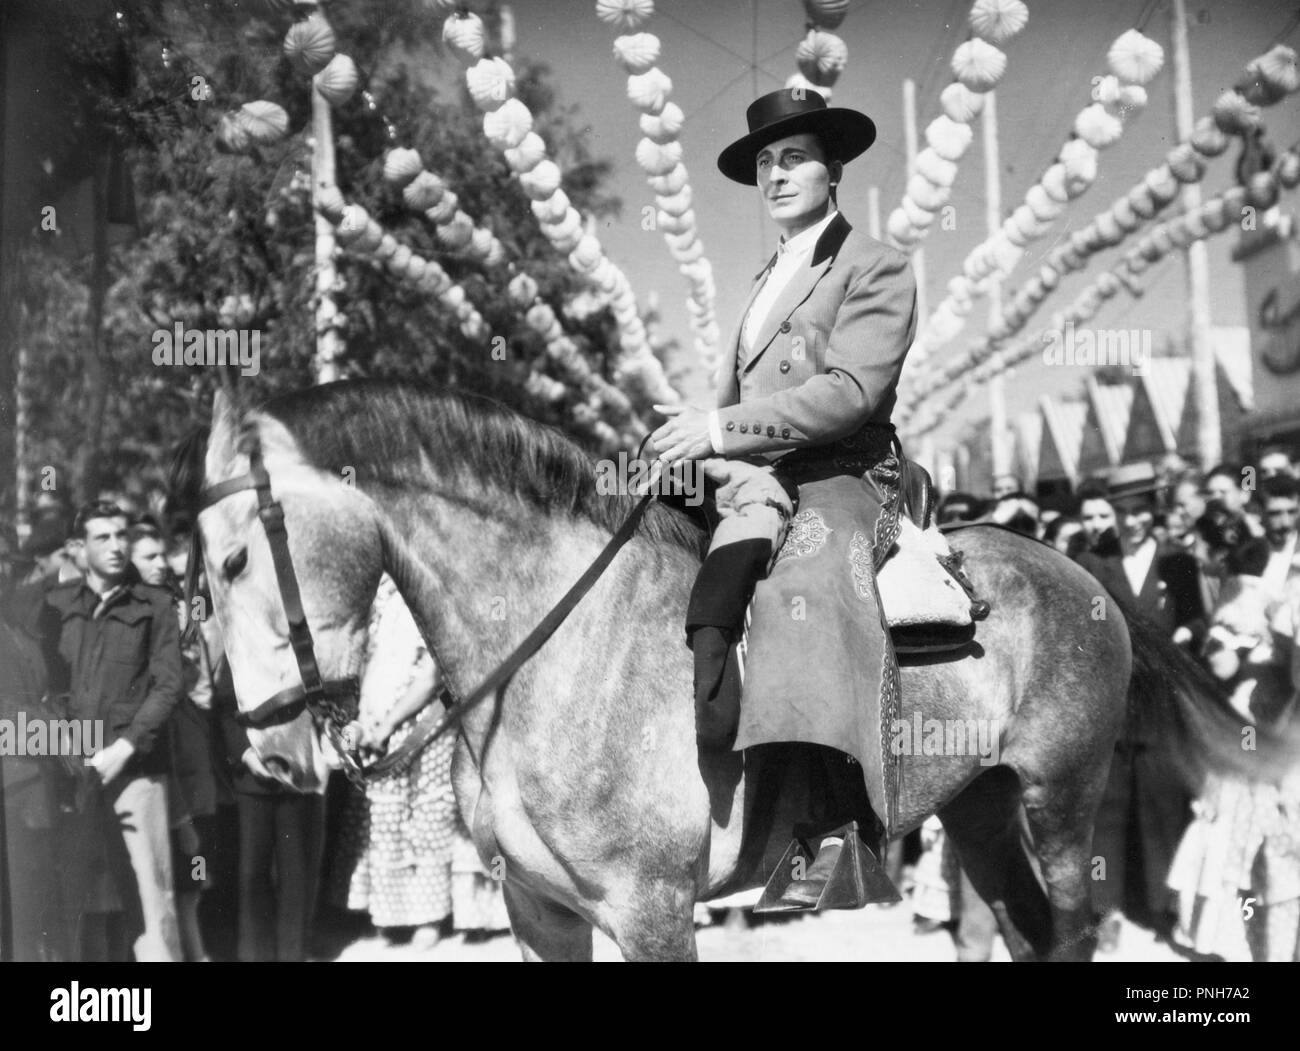 Original film title: RUMBO. English title: RUMBO. Year: 1950. Director: RAMON TORRADO. Stock Photo